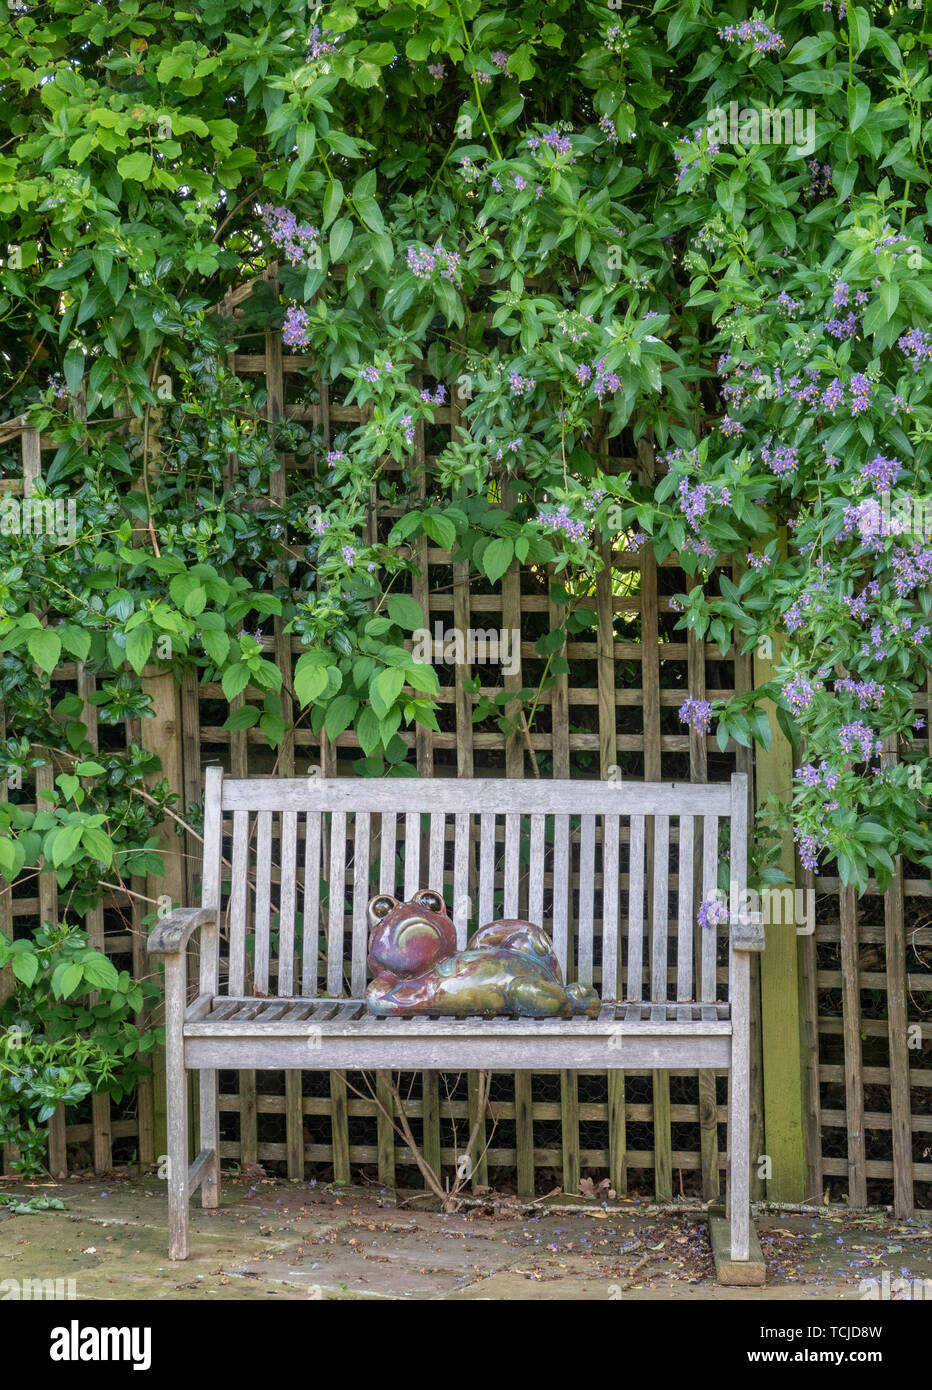 Eine Töpferei Abbildung einer Kröte liegend auf einer Gartenbank neben einem Gitter abgedeckt von Solanum crispum Glasnevin, aka Solanum crispum Herbstliche, Kartoffel Baum Stockfoto